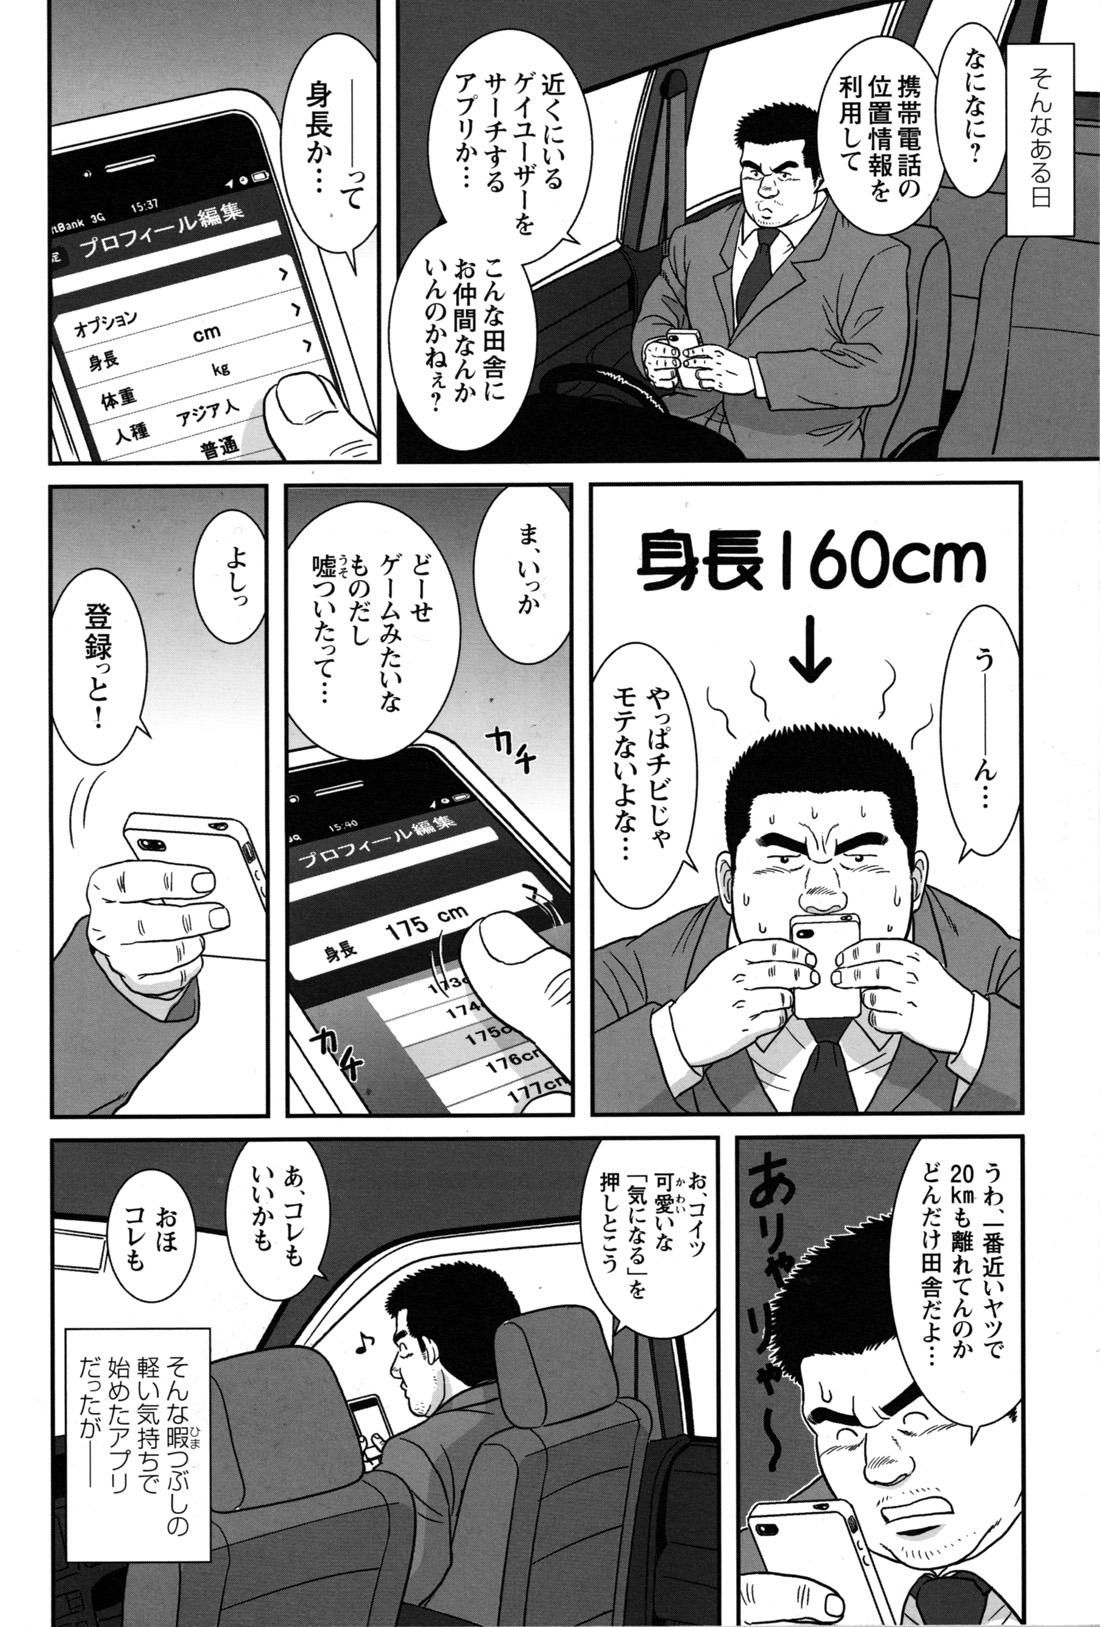 Comic G-men Gaho No.09 Gacchibi Zeme 80